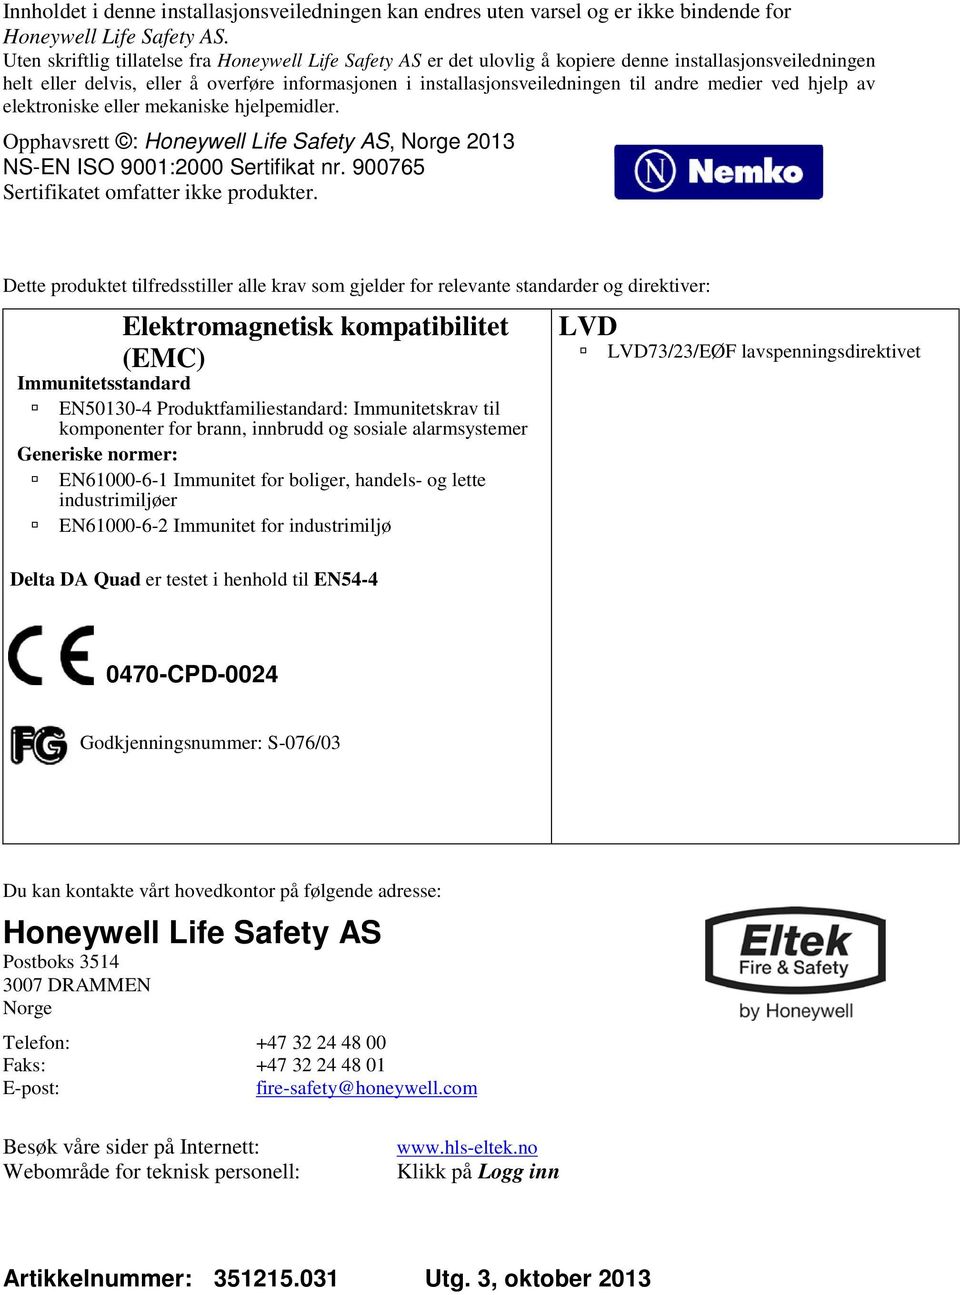 medier ved hjelp av elektroniske eller mekaniske hjelpemidler. Opphavsrett : Honeywell Life Safety AS, Norge 2013 NS-EN ISO 9001:2000 Sertifikat nr. 900765 Sertifikatet omfatter ikke produkter.